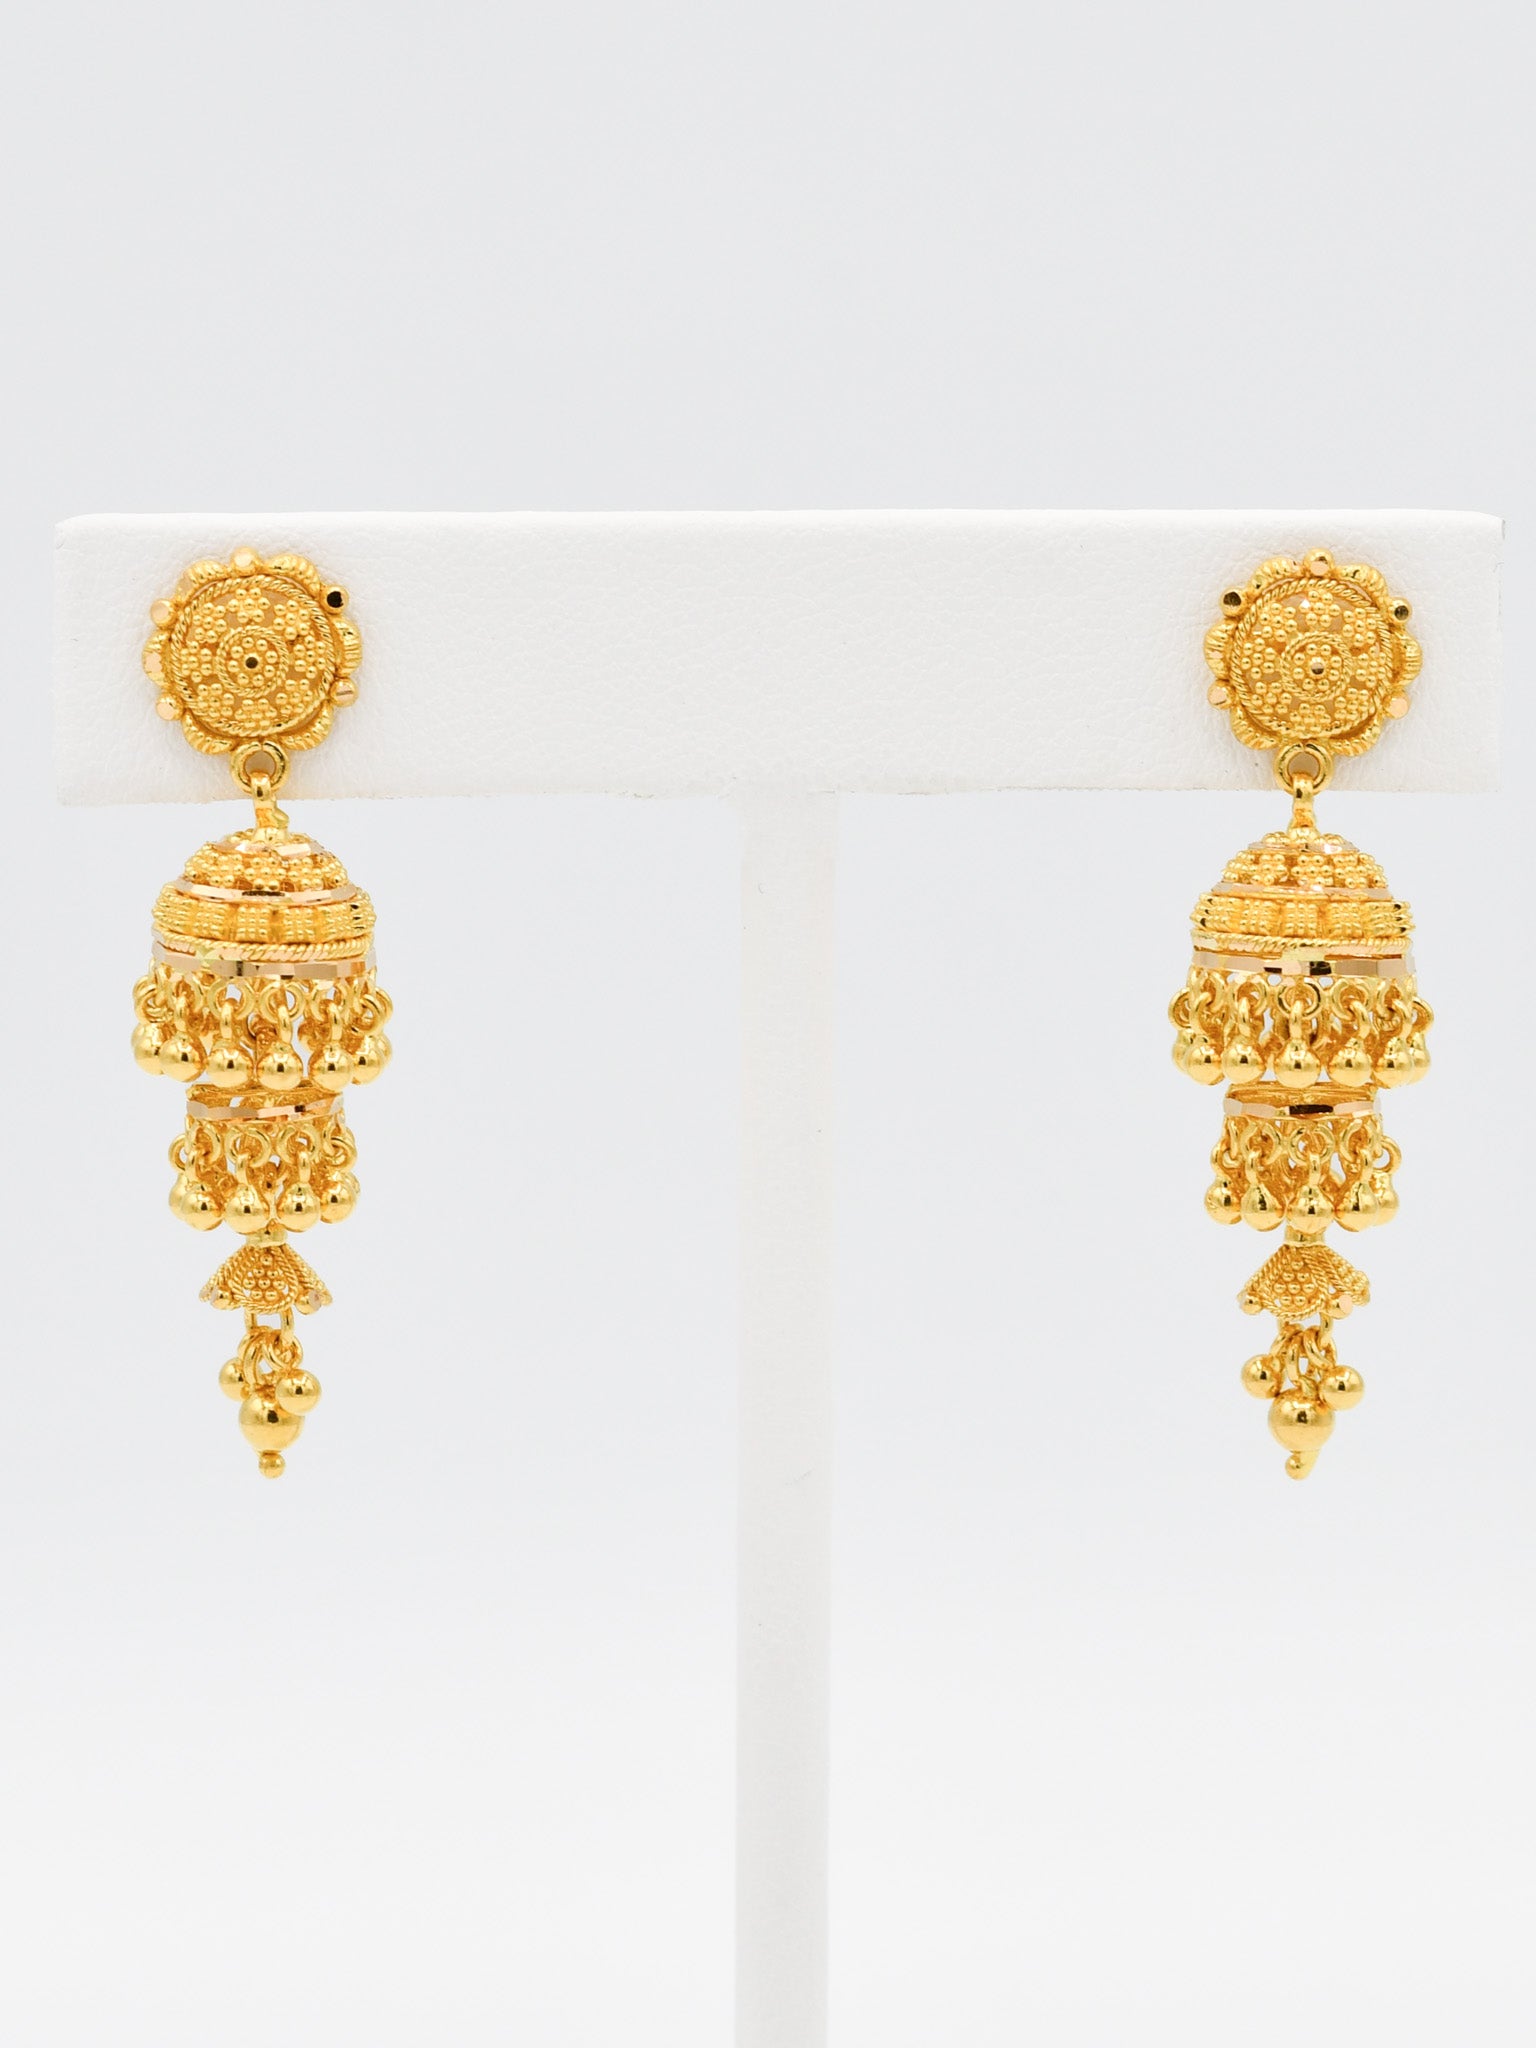 22ct Gold 3 Layer Jhumki Earrings - Roop Darshan